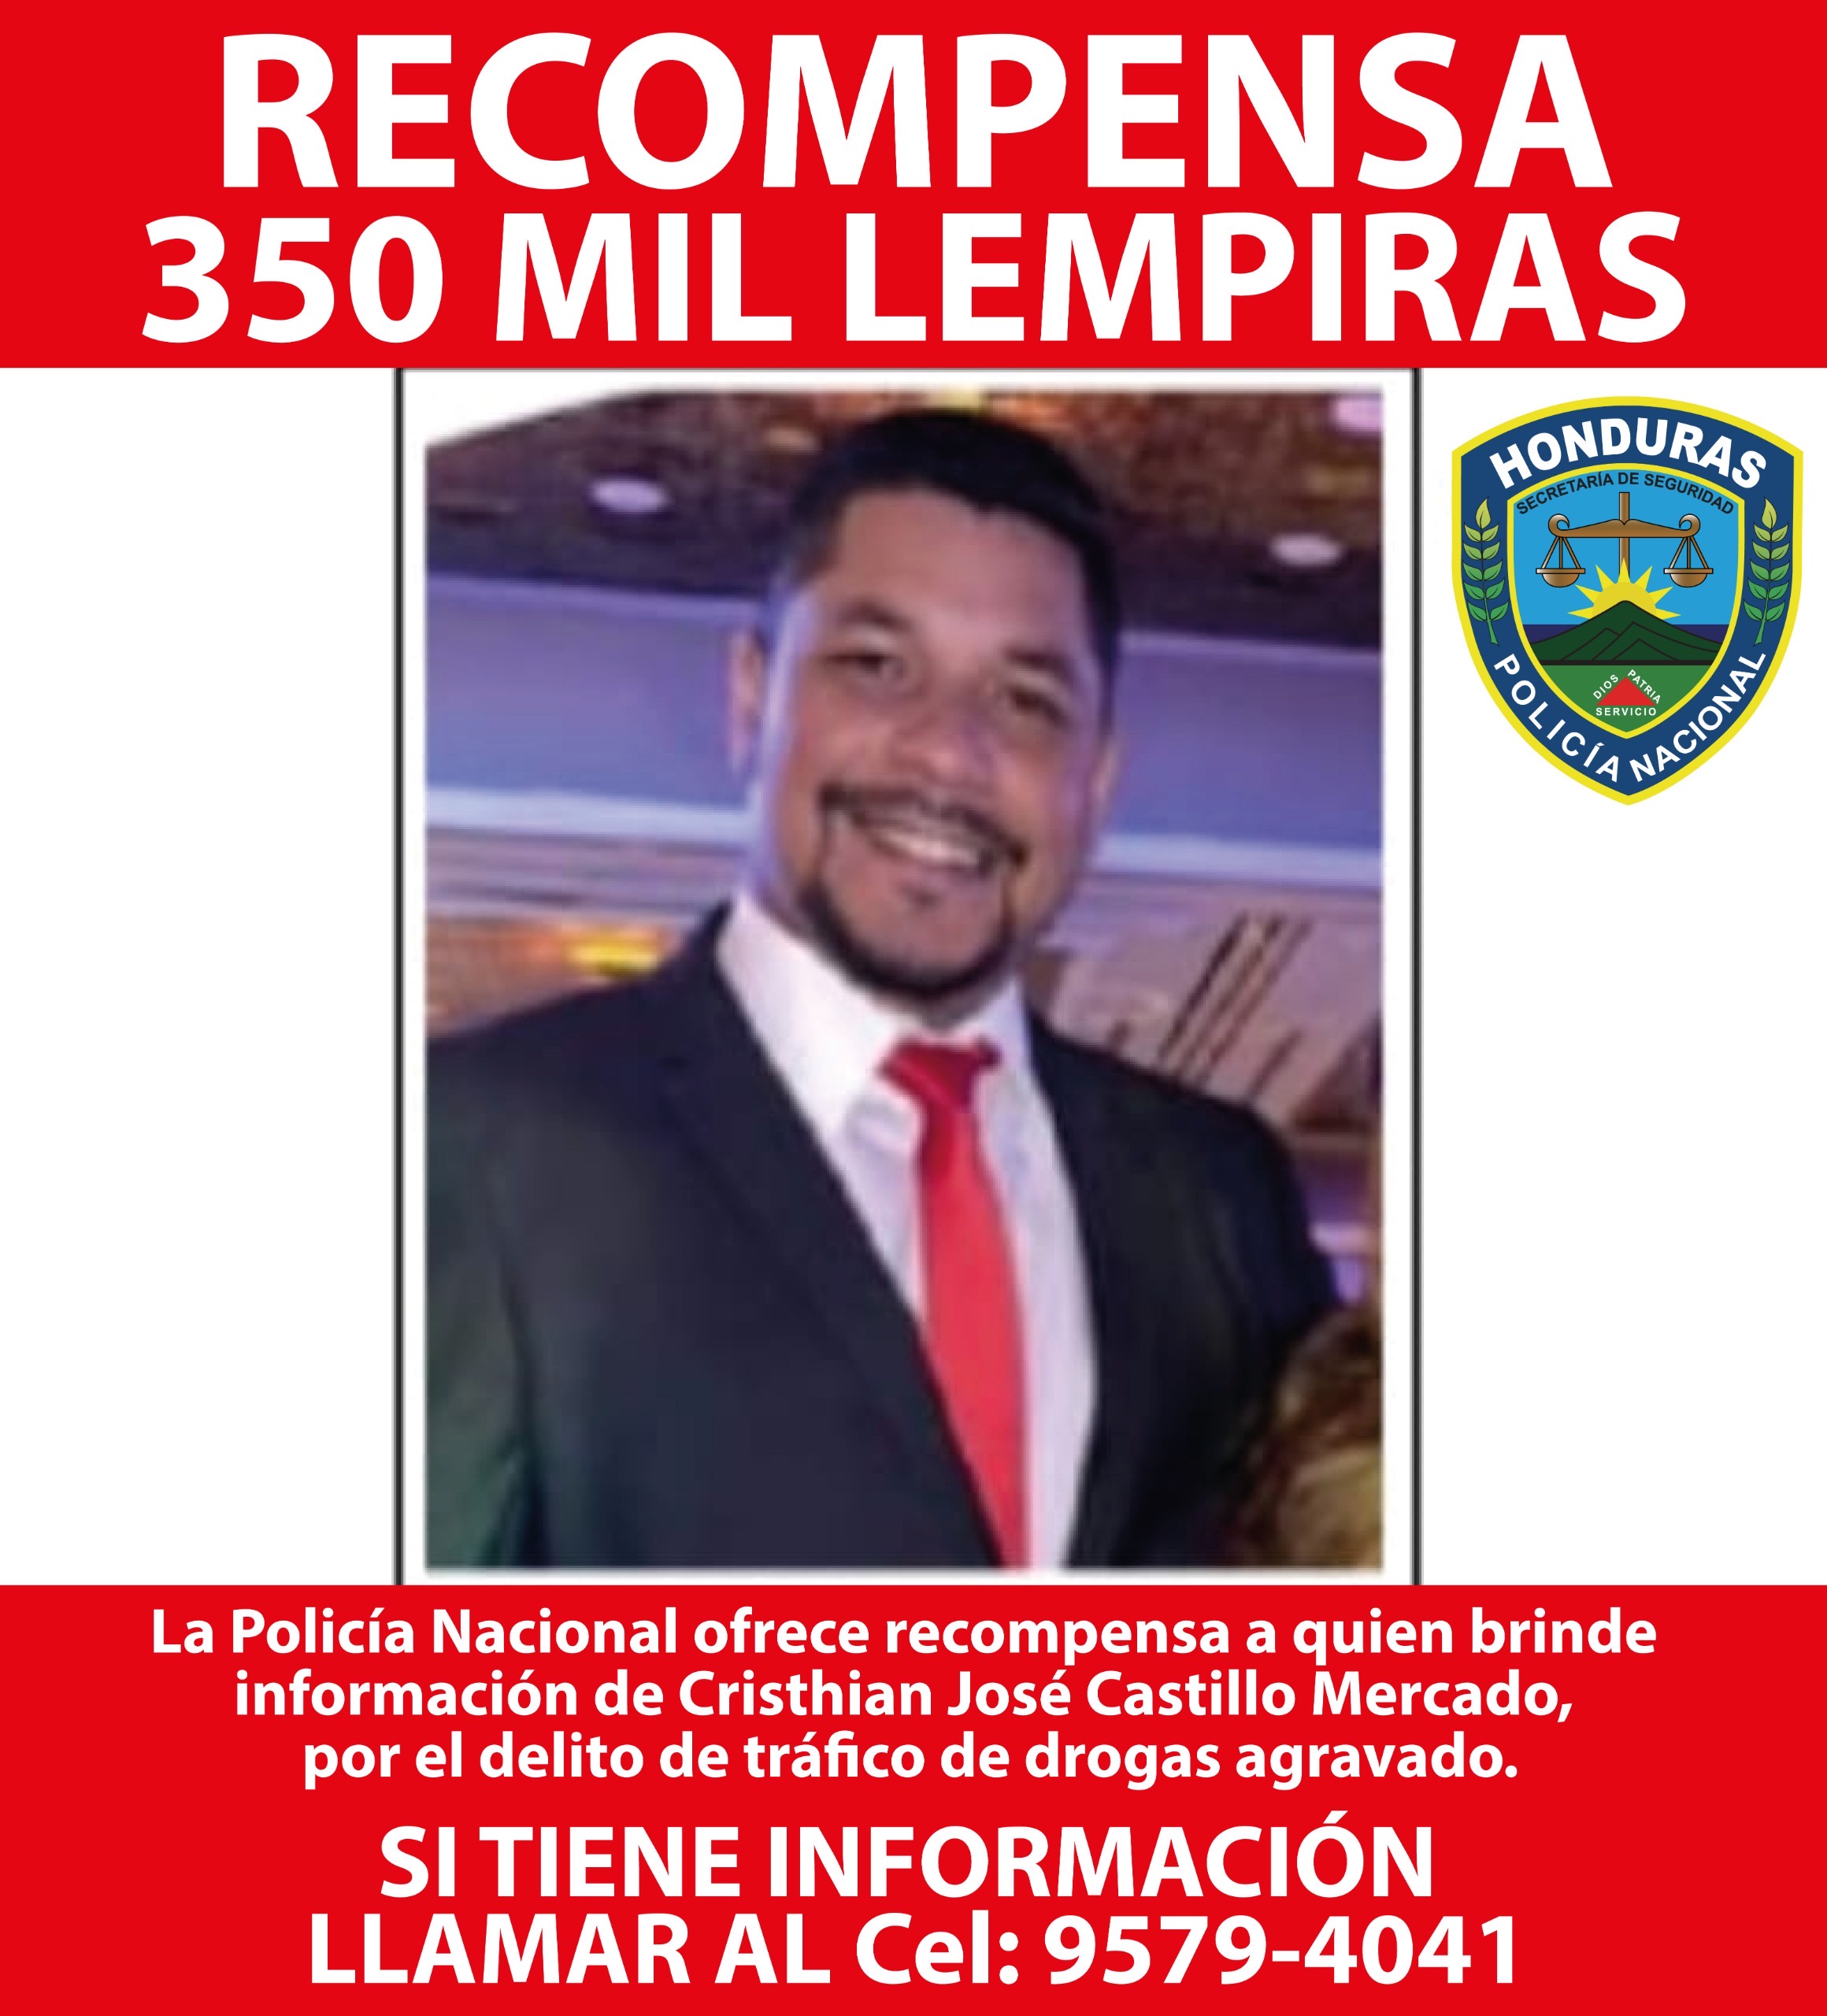 La Policía Nacional ofrece recompensa de 350 mil lempiras por quien brinde información del alcalde de El Triunfo, Choluteca.